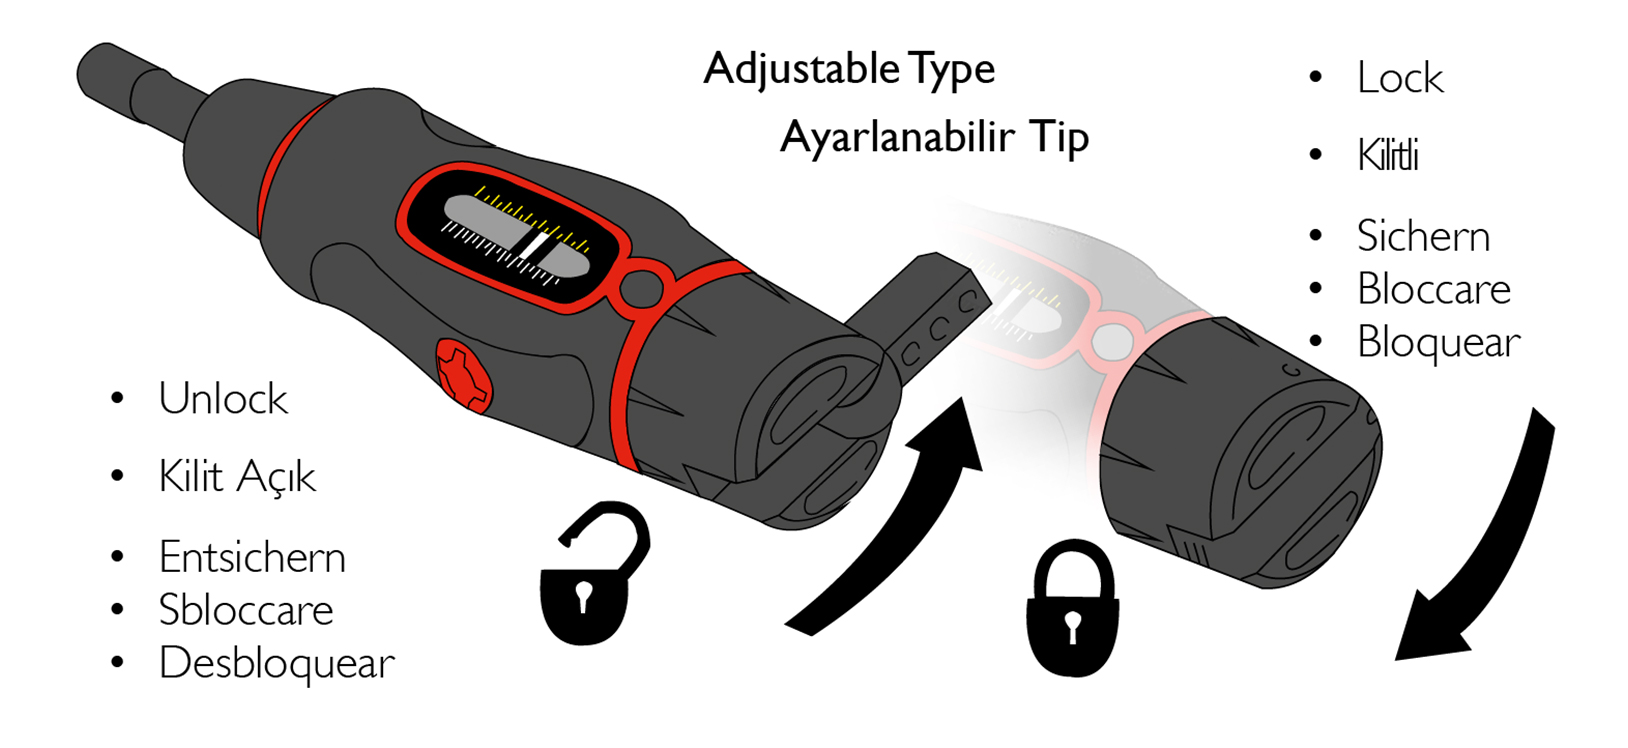 tts-torque-screwdriver-adjustable-type